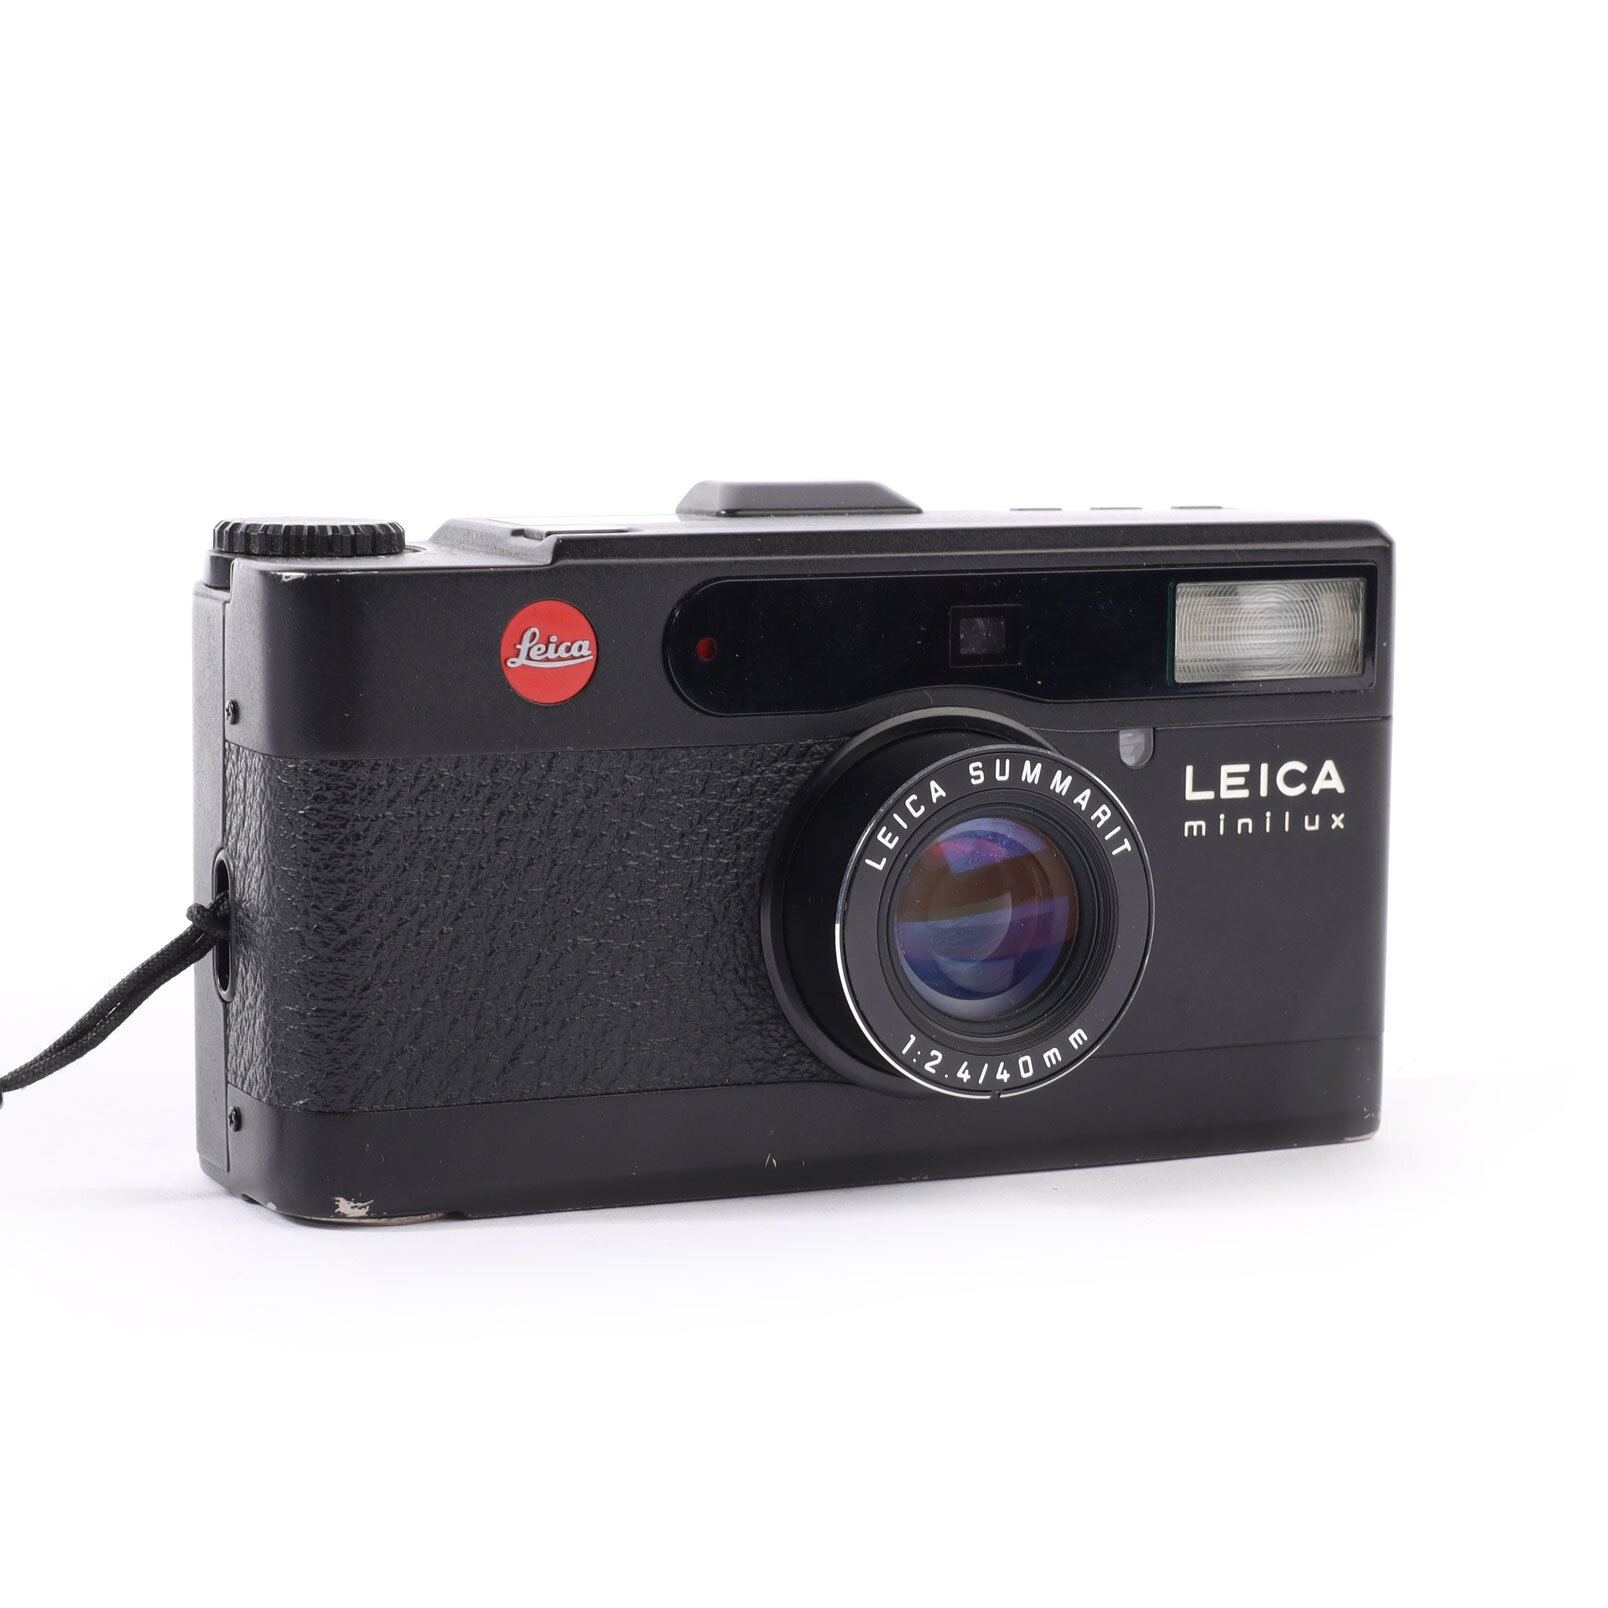 Leica Minilux Summarit 2.4/40mm Schwarz